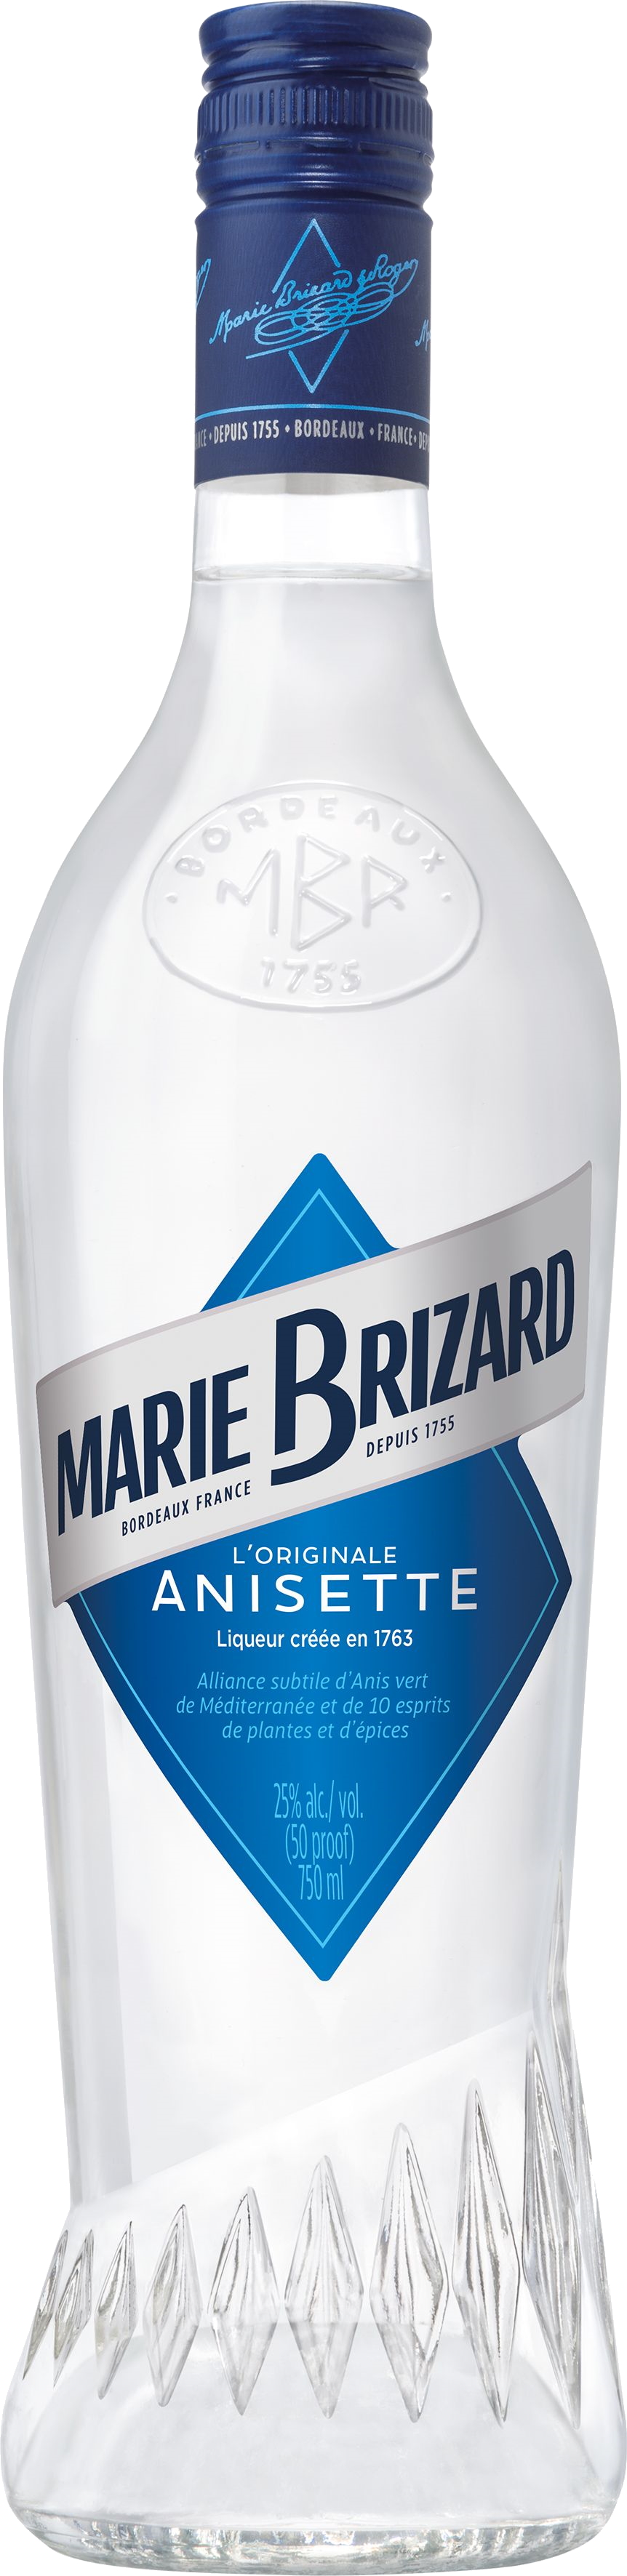 https://www.bottlevalues.com/images/sites/bottlevalues/labels/marie-brizard-anisette_1.jpg